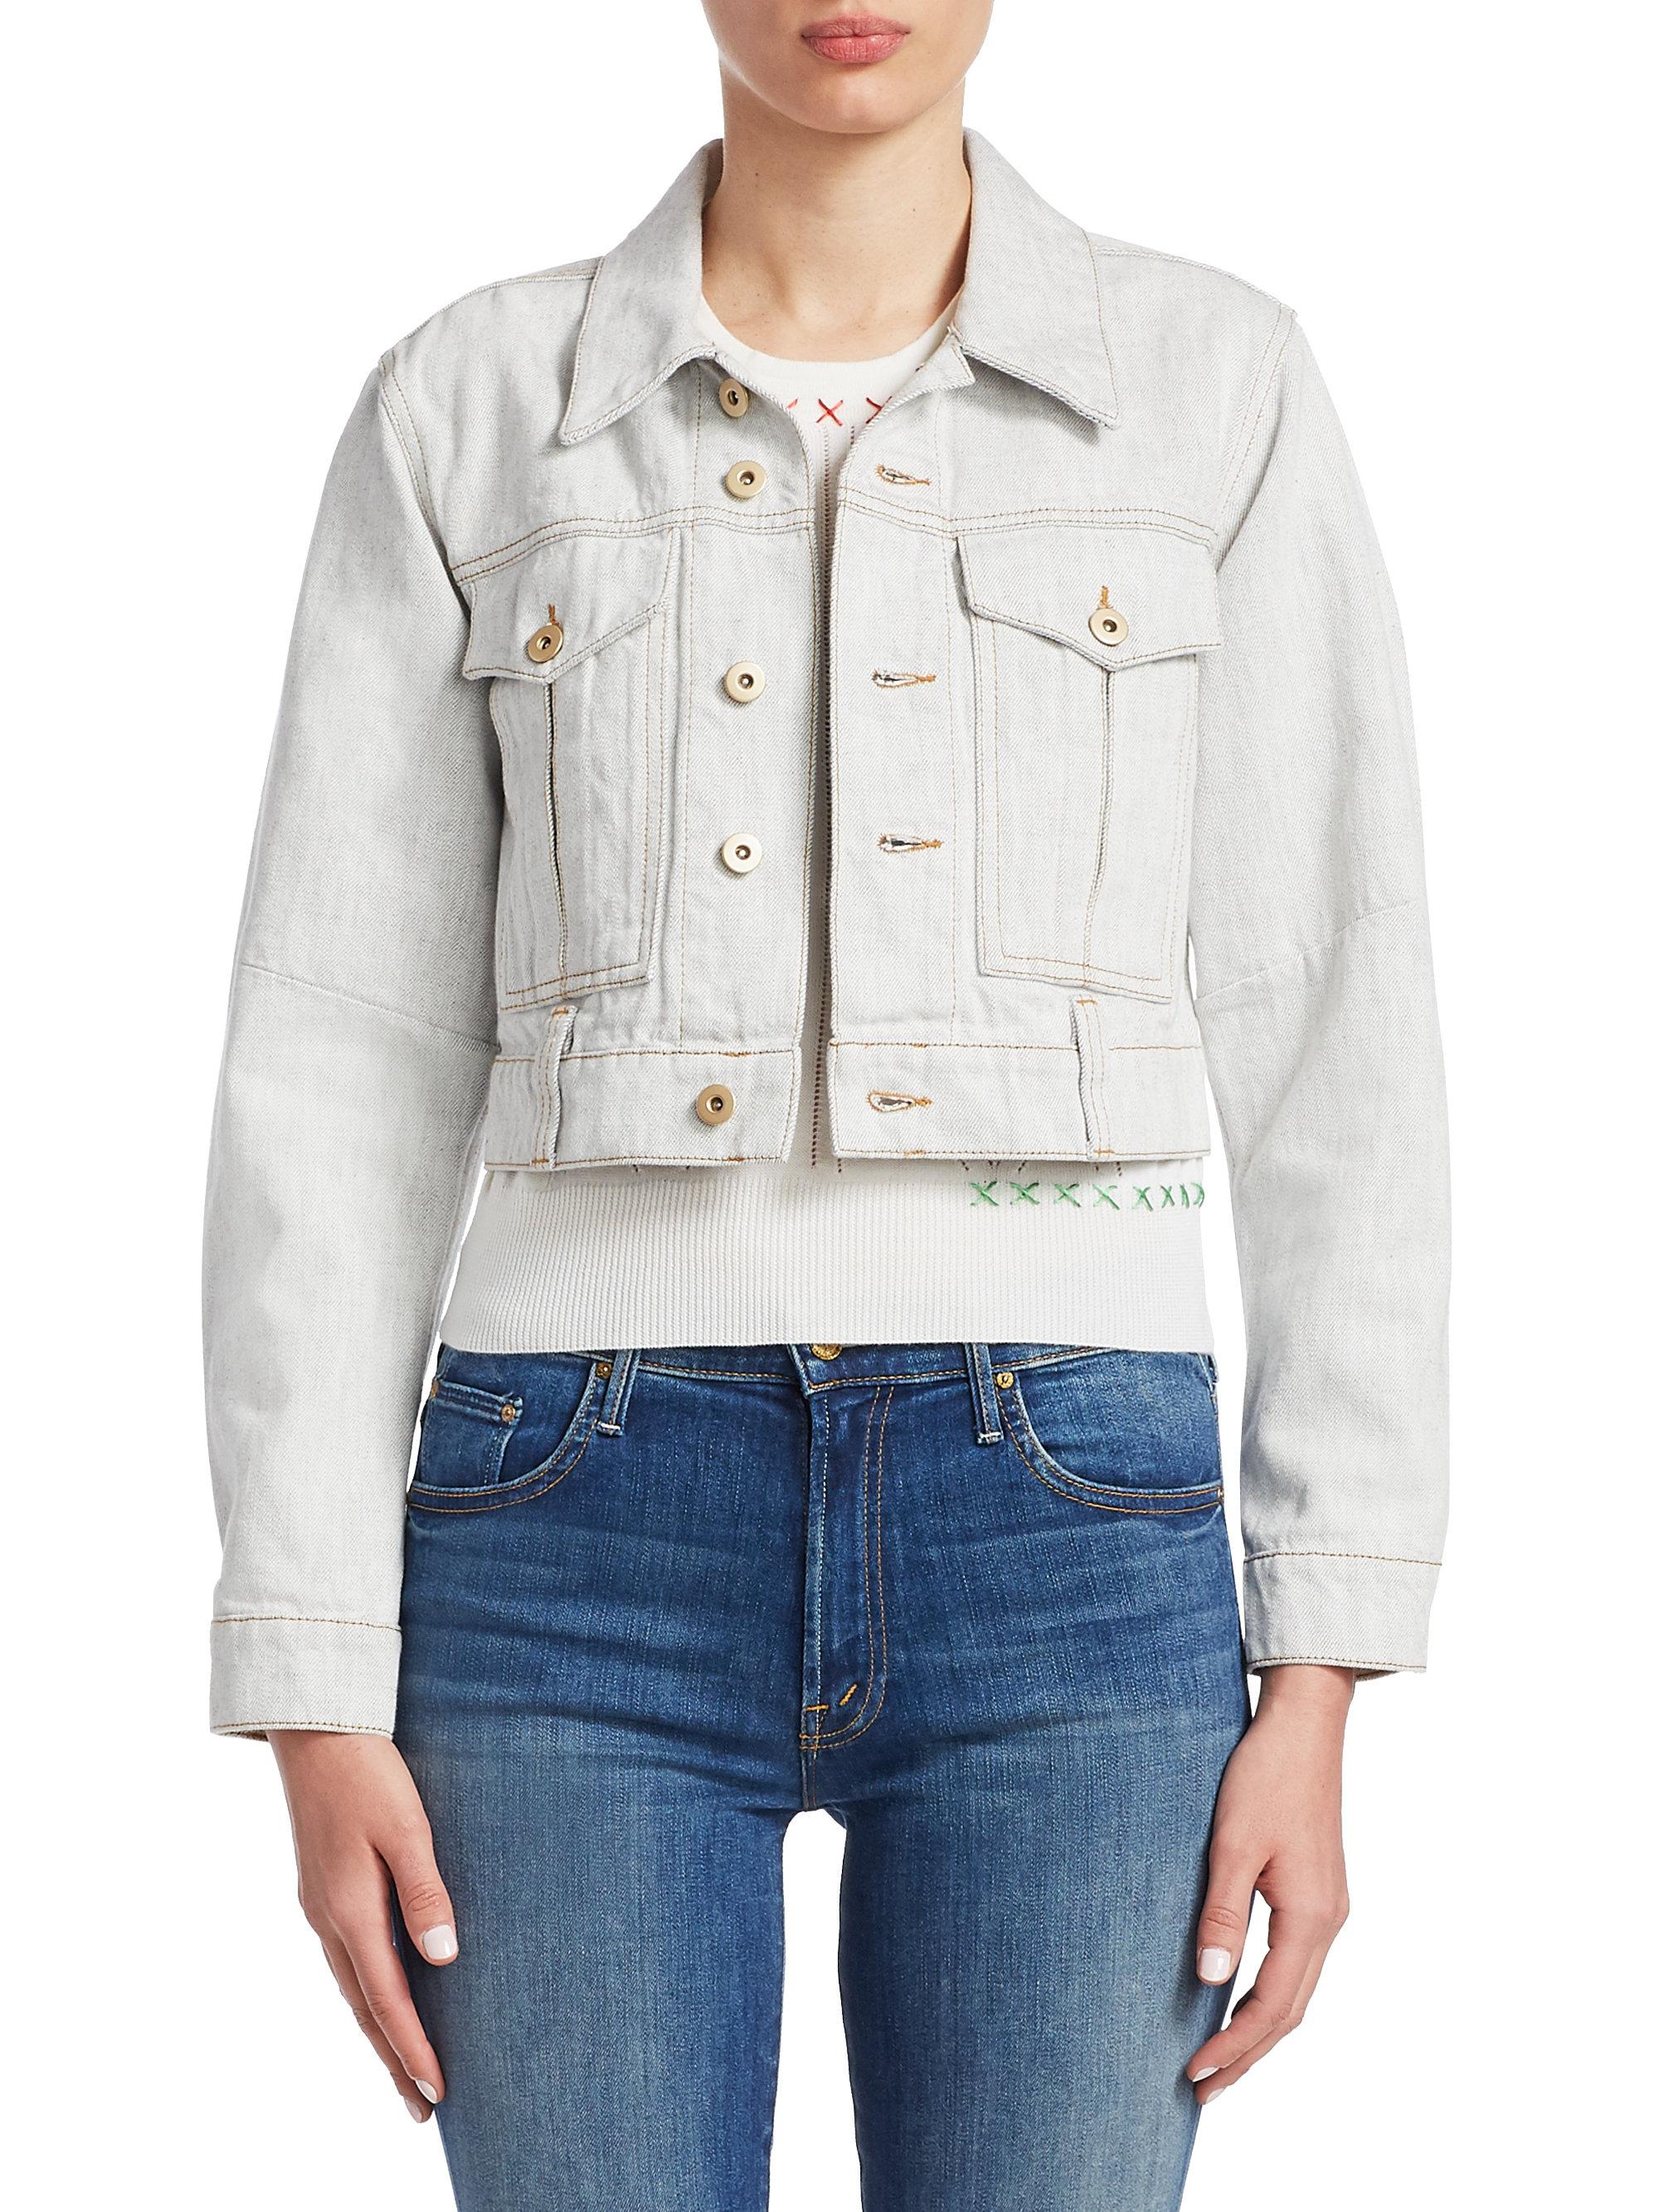 Lyst - Carven Crop Denim Jacket in White